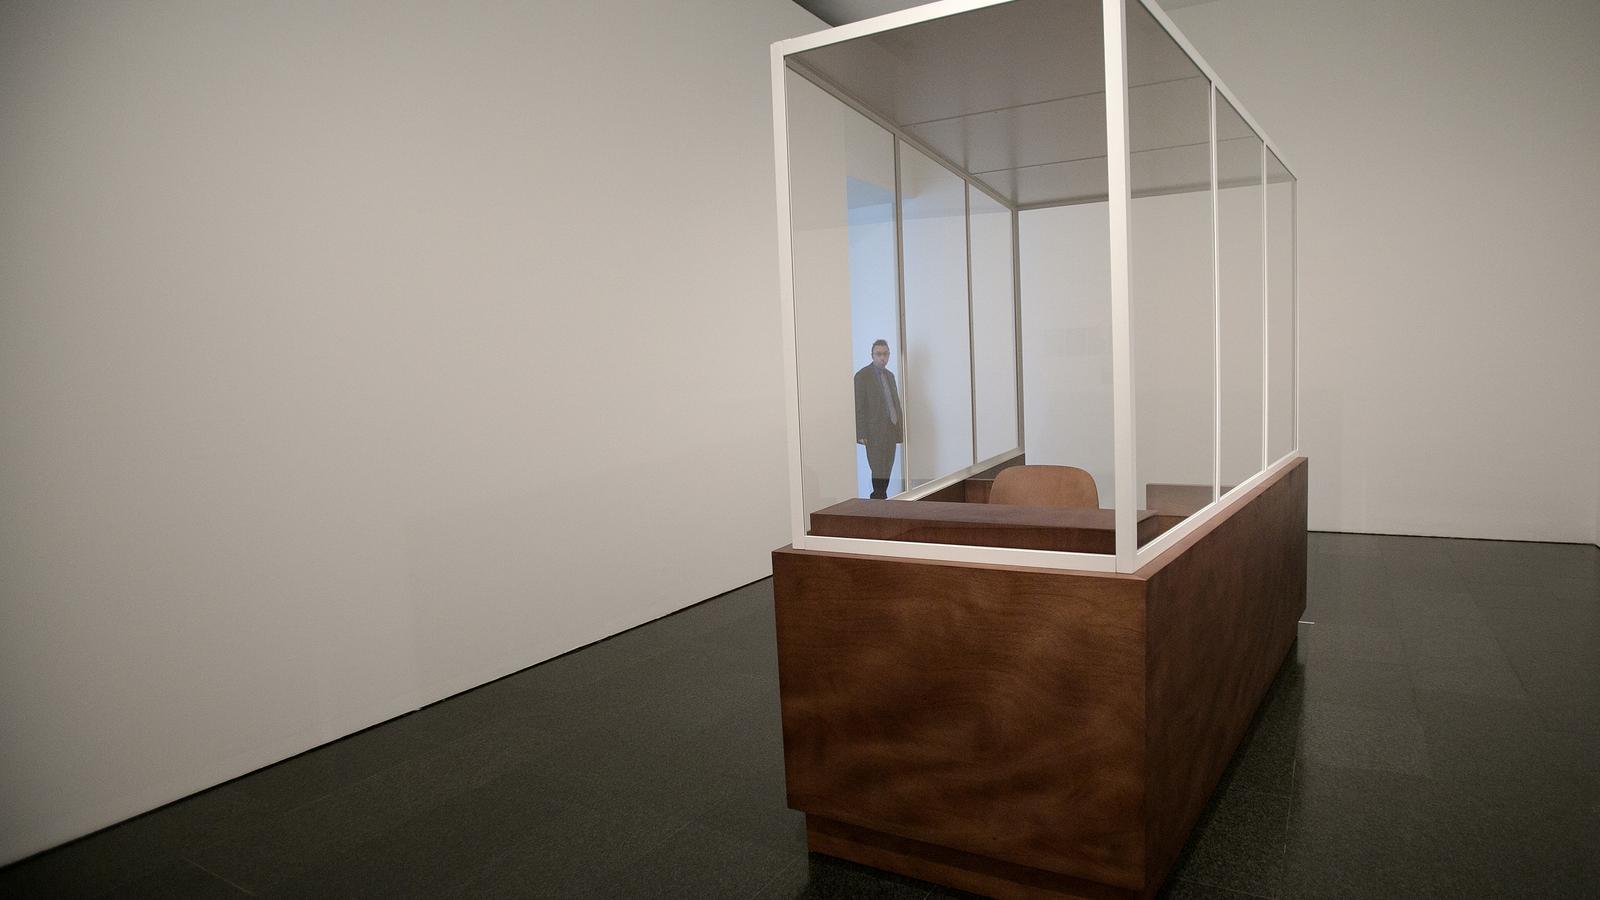 'Audiència pública', de Domènec, és una recreació de la cabina d'Eichmann als judicis de Nuremberg / PERE TORDERA